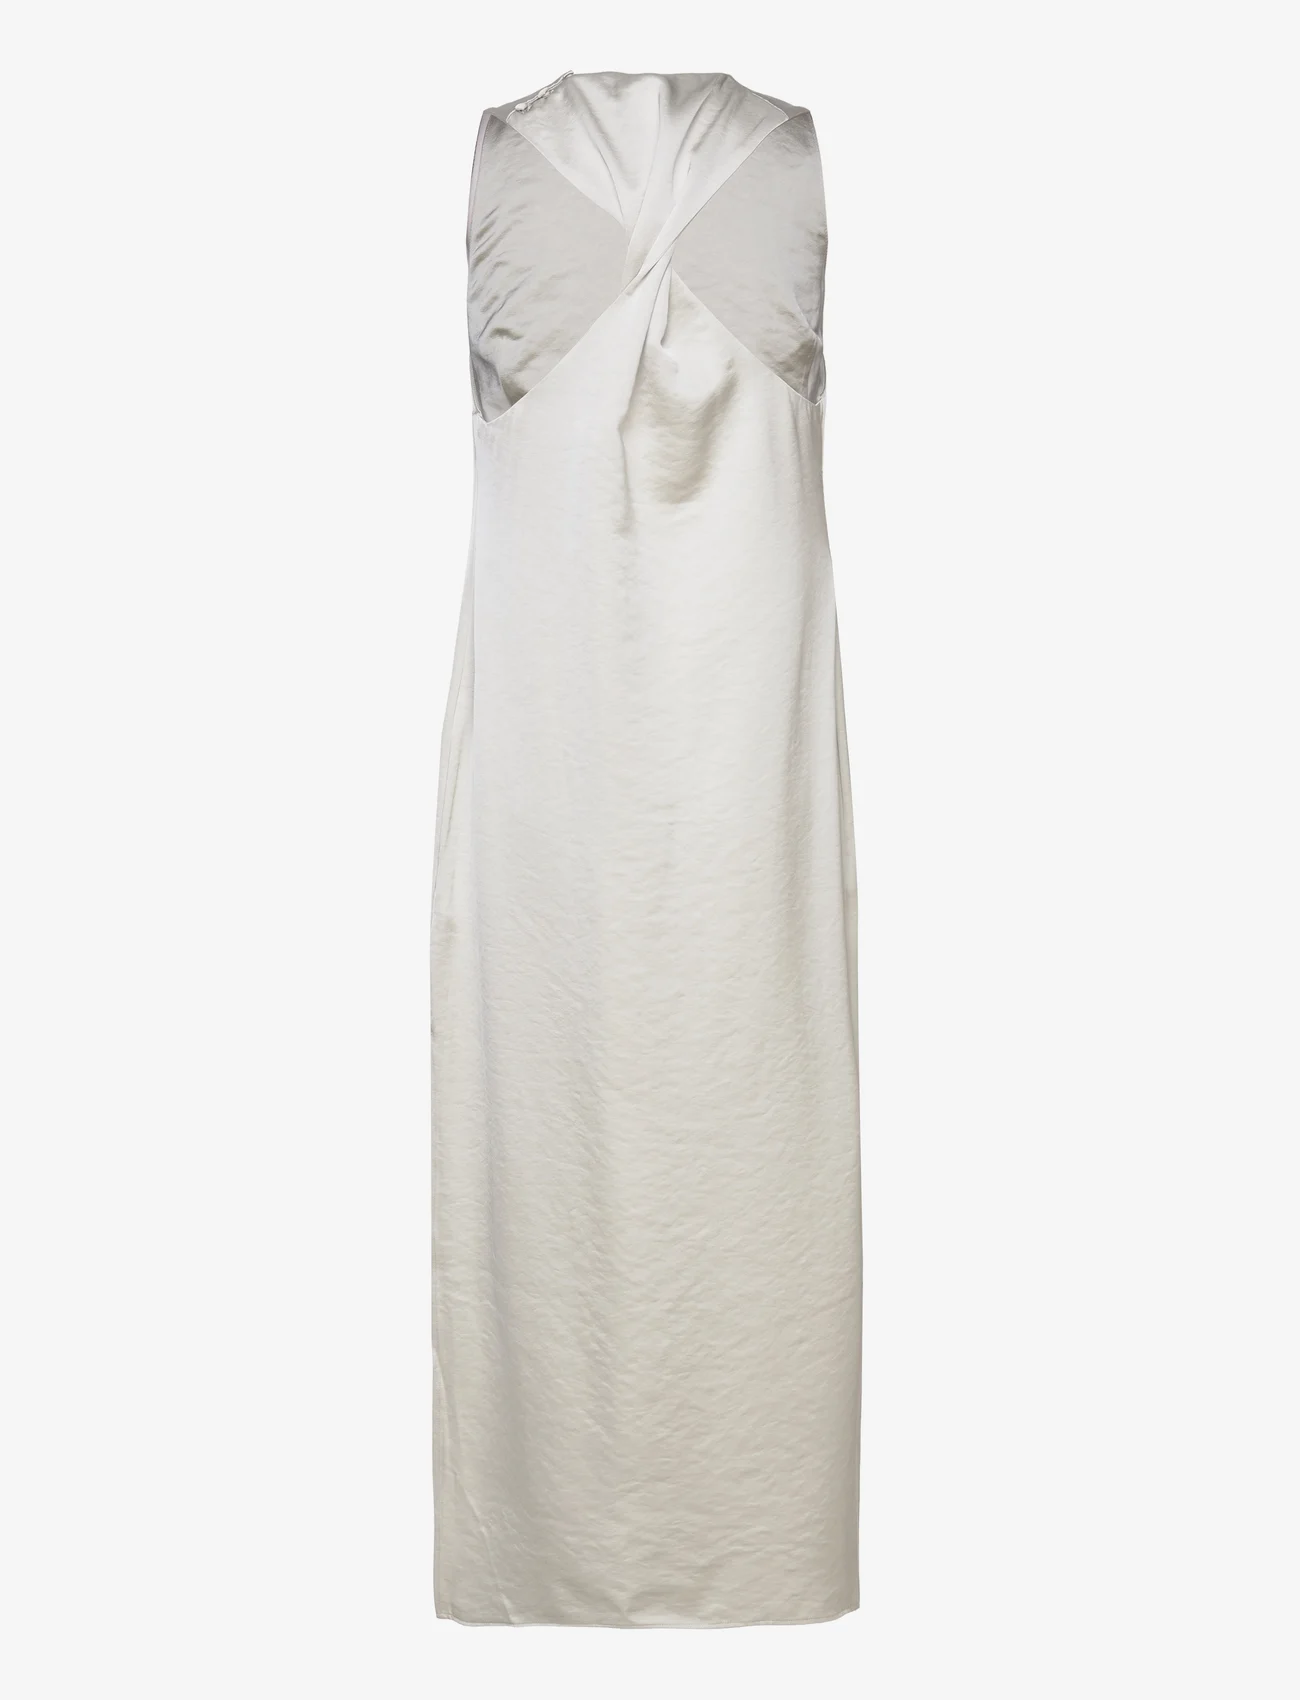 Samsøe Samsøe - Ellie dress 14773 - odzież imprezowa w cenach outletowych - white onyx - 1